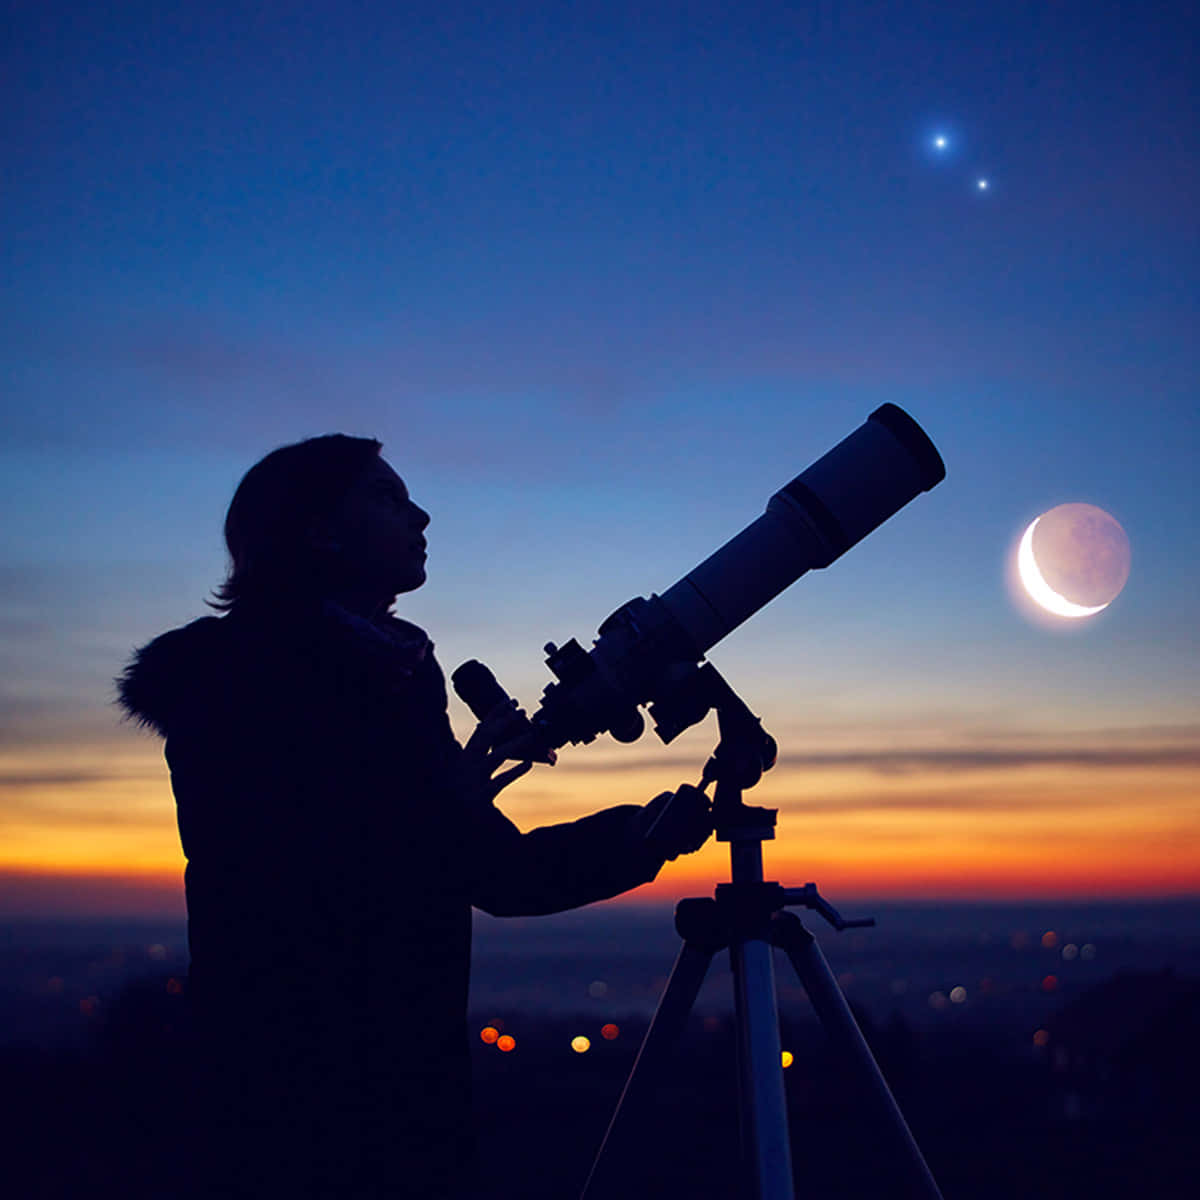 Telescopiopara Fotografías Astronómicas